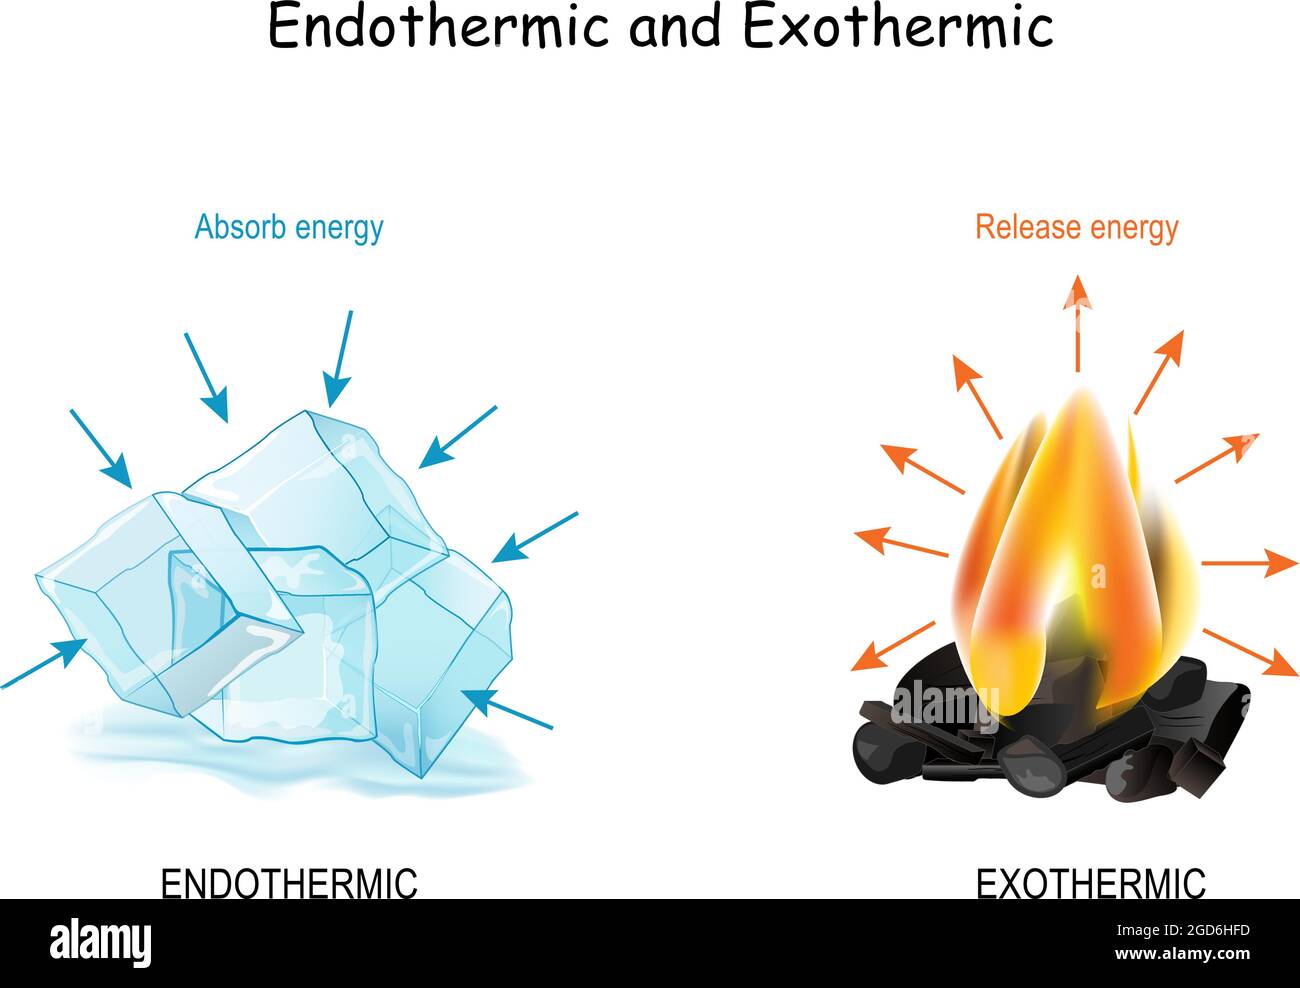 Réactions chimiques endothermiques et exothermiques. Les glaçons froids absorbent l'énergie et le feu chaud libère de l'énergie. Affiche Illustration de Vecteur